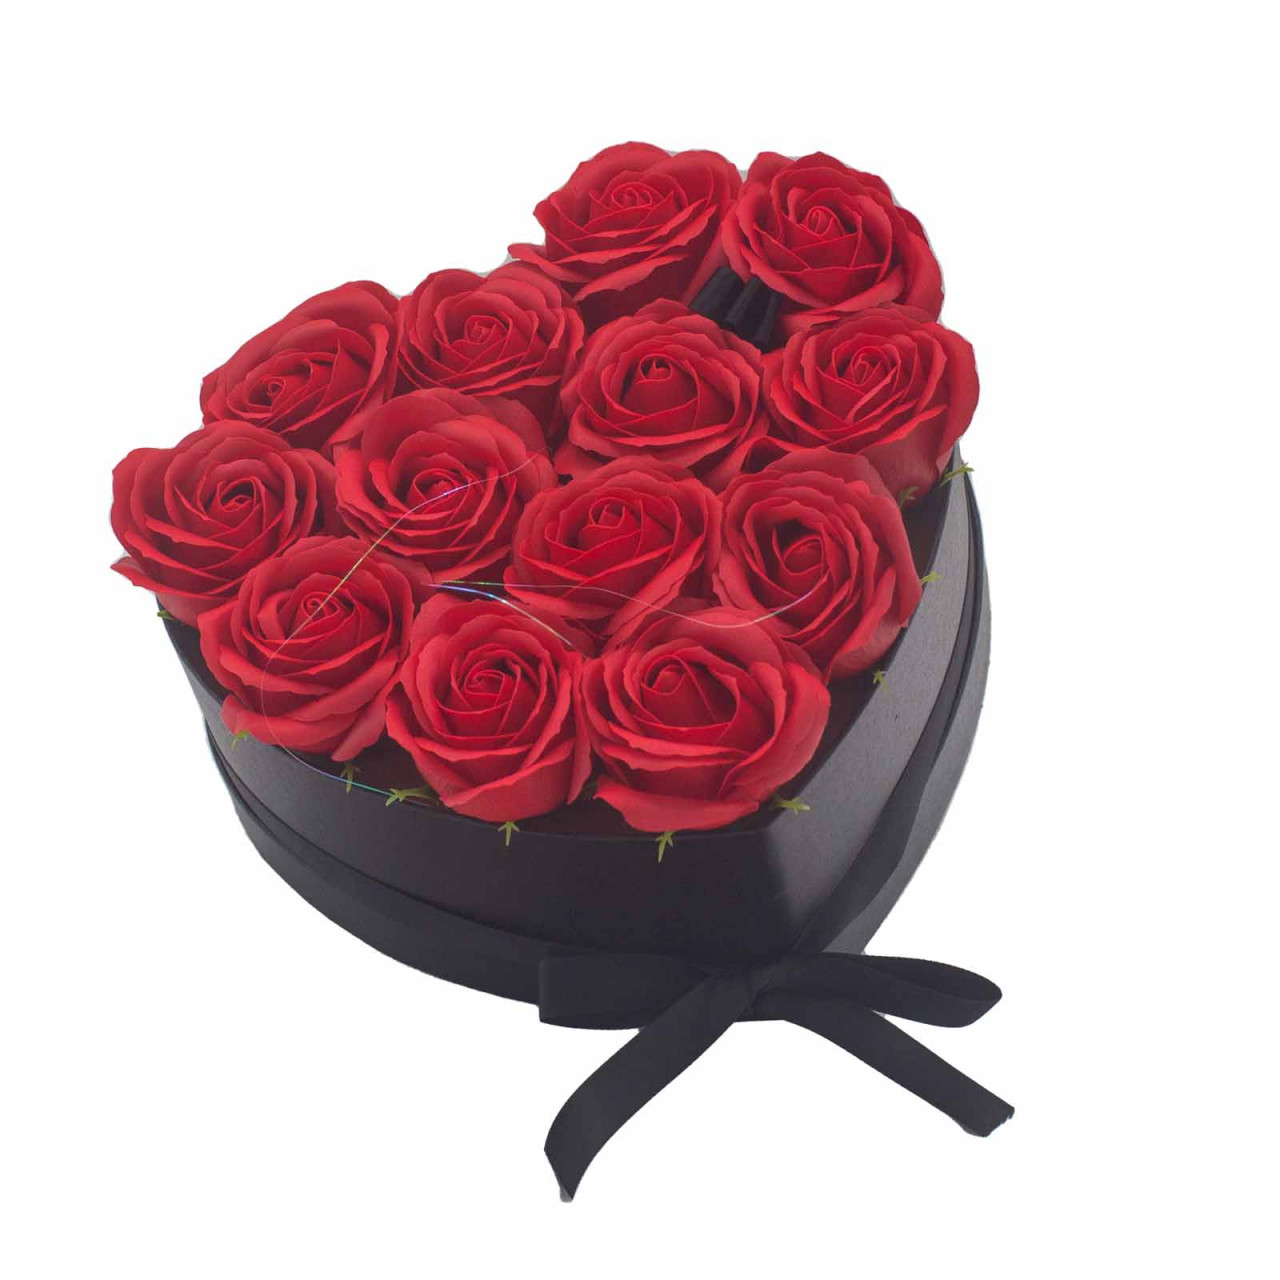 Buchet Flori de Săpun în Cutie Cadou - 13 Trandafiri Roșii - Inimă